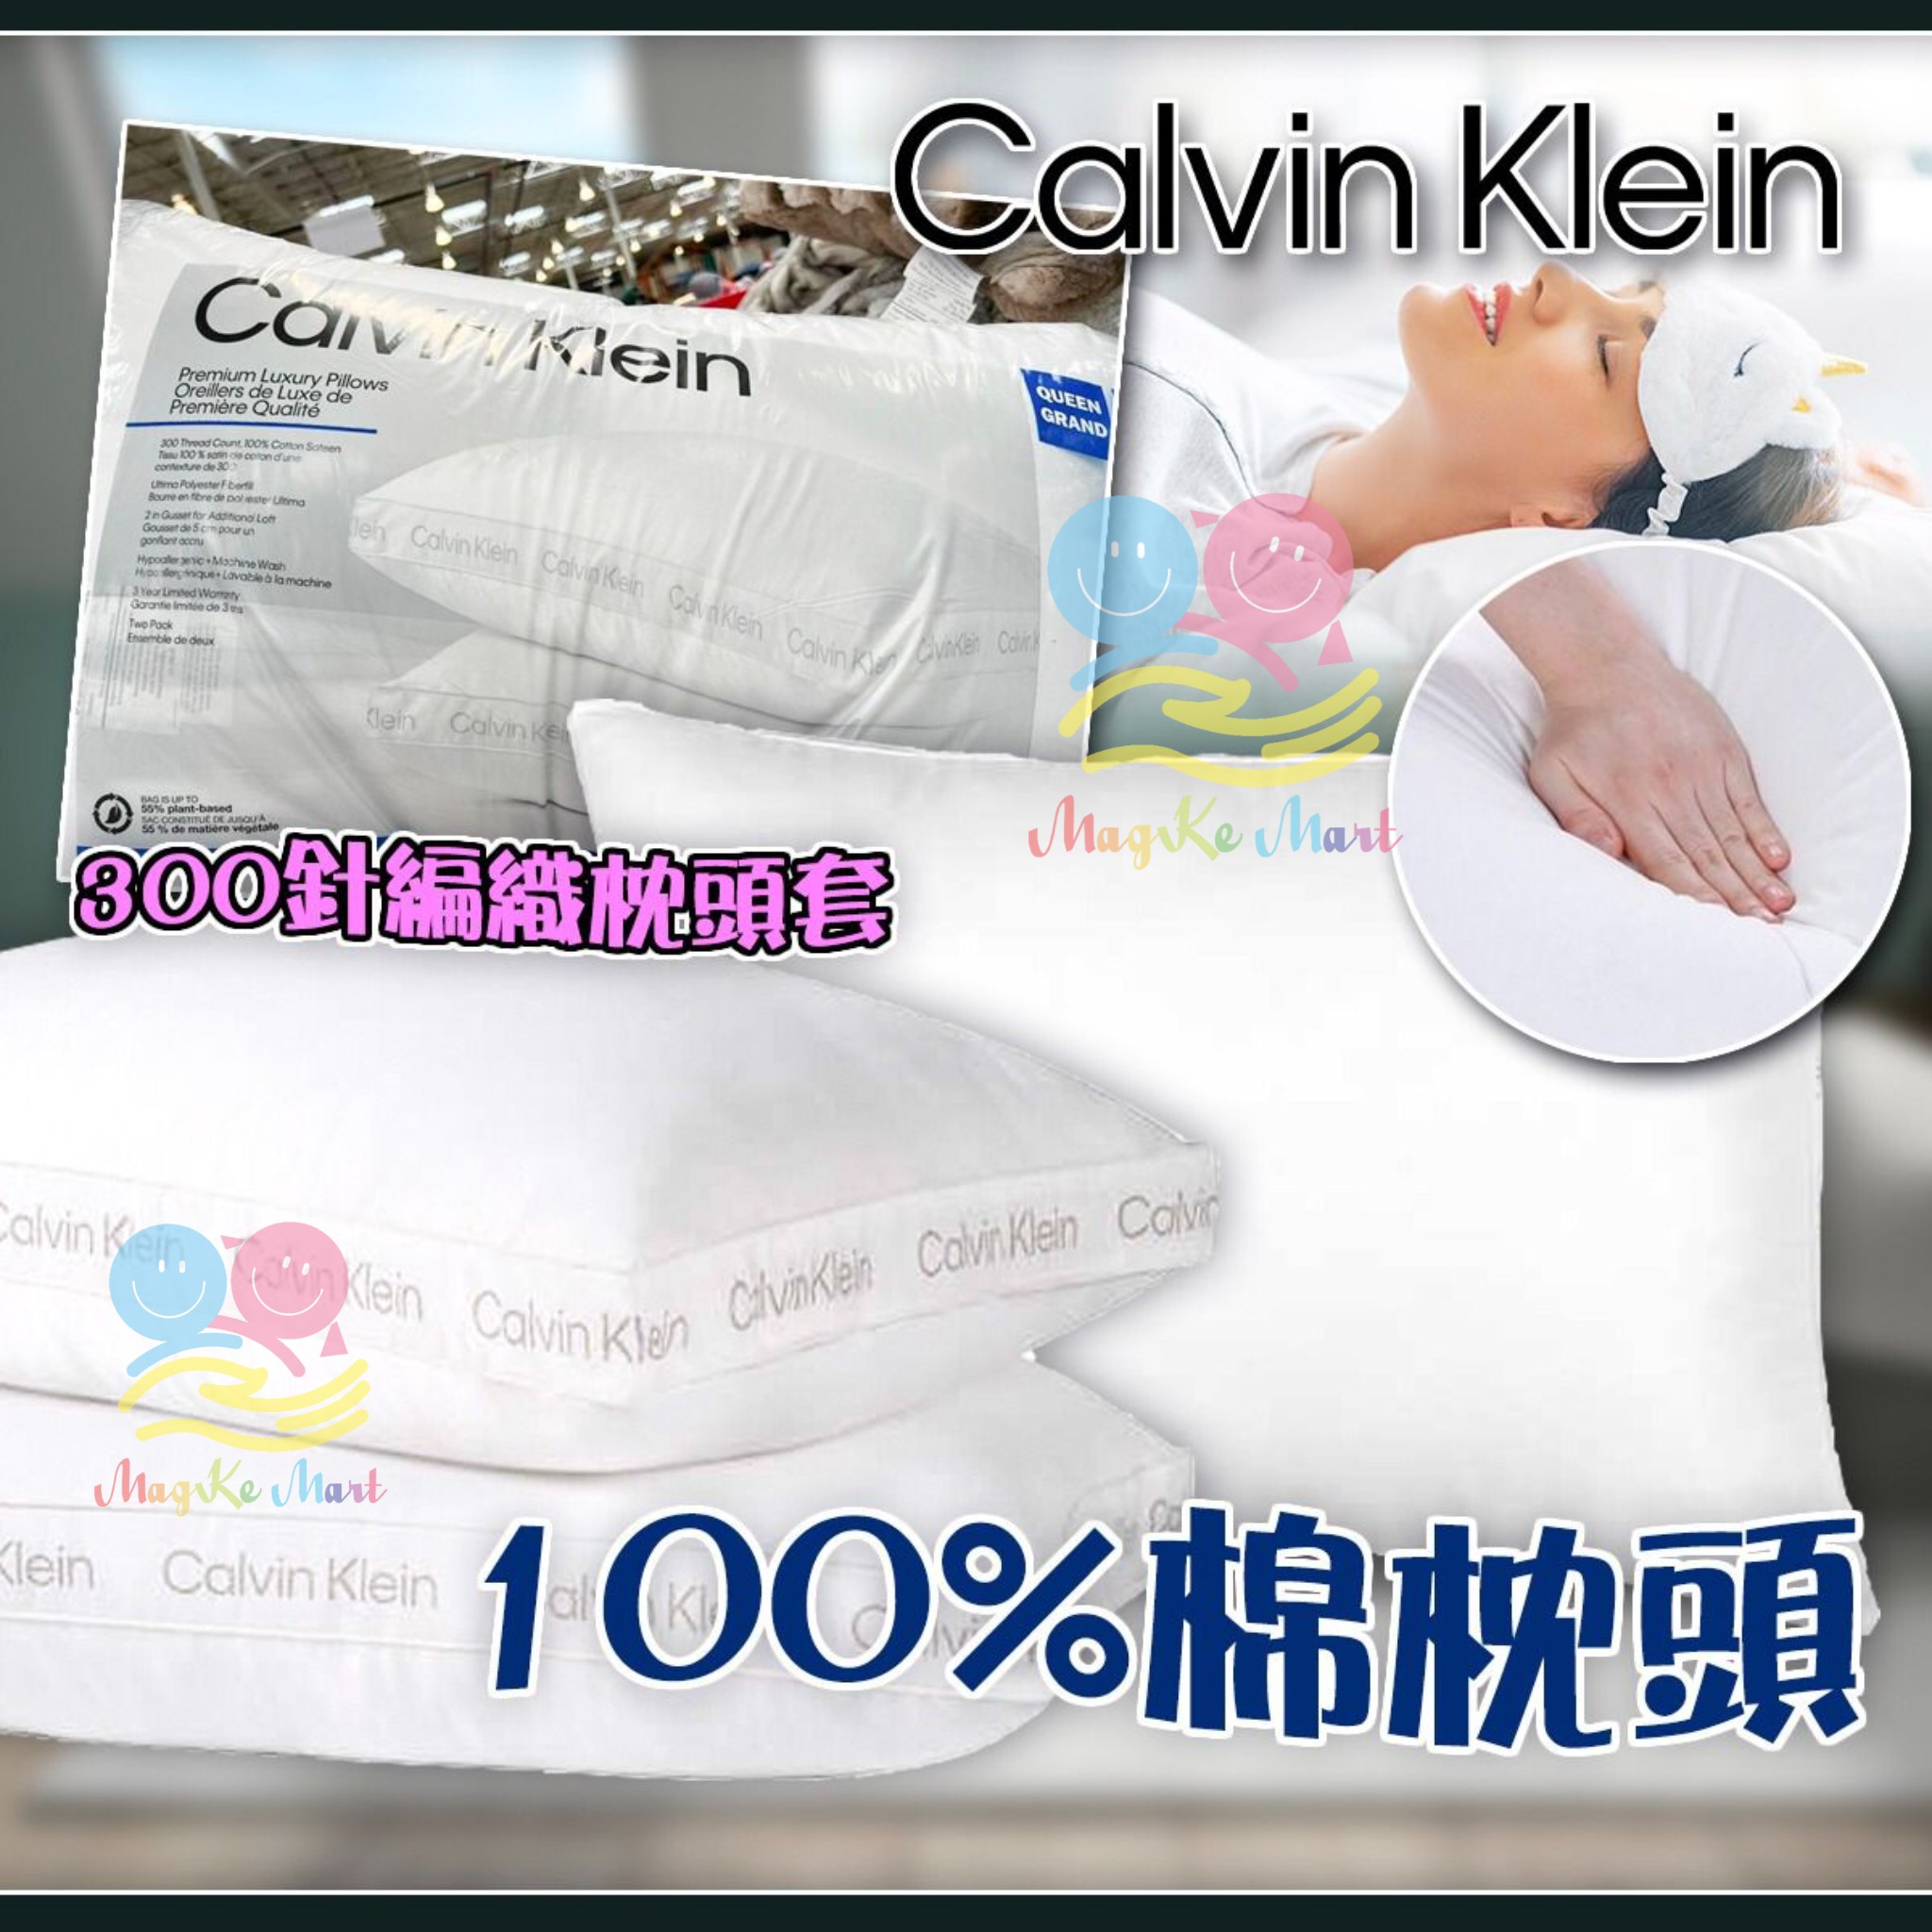 Calvin Klein 100%棉枕頭(1套2個)